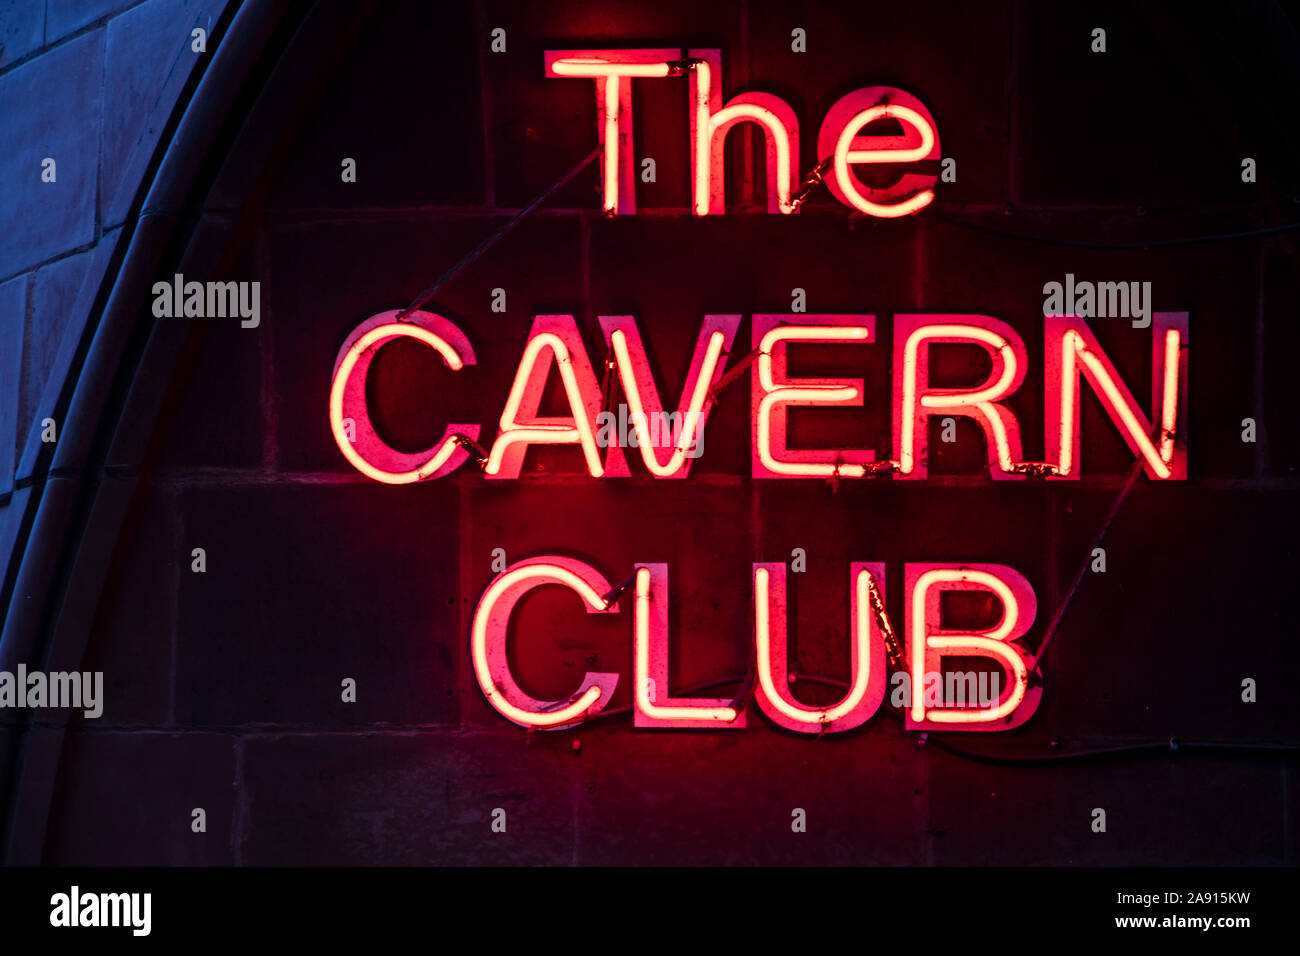 Liverpool, Großbritannien - 30. Oktober 2019: Unterzeichnung des weltbekannten Cavern Club in Liverpool, Eingang Stockfoto